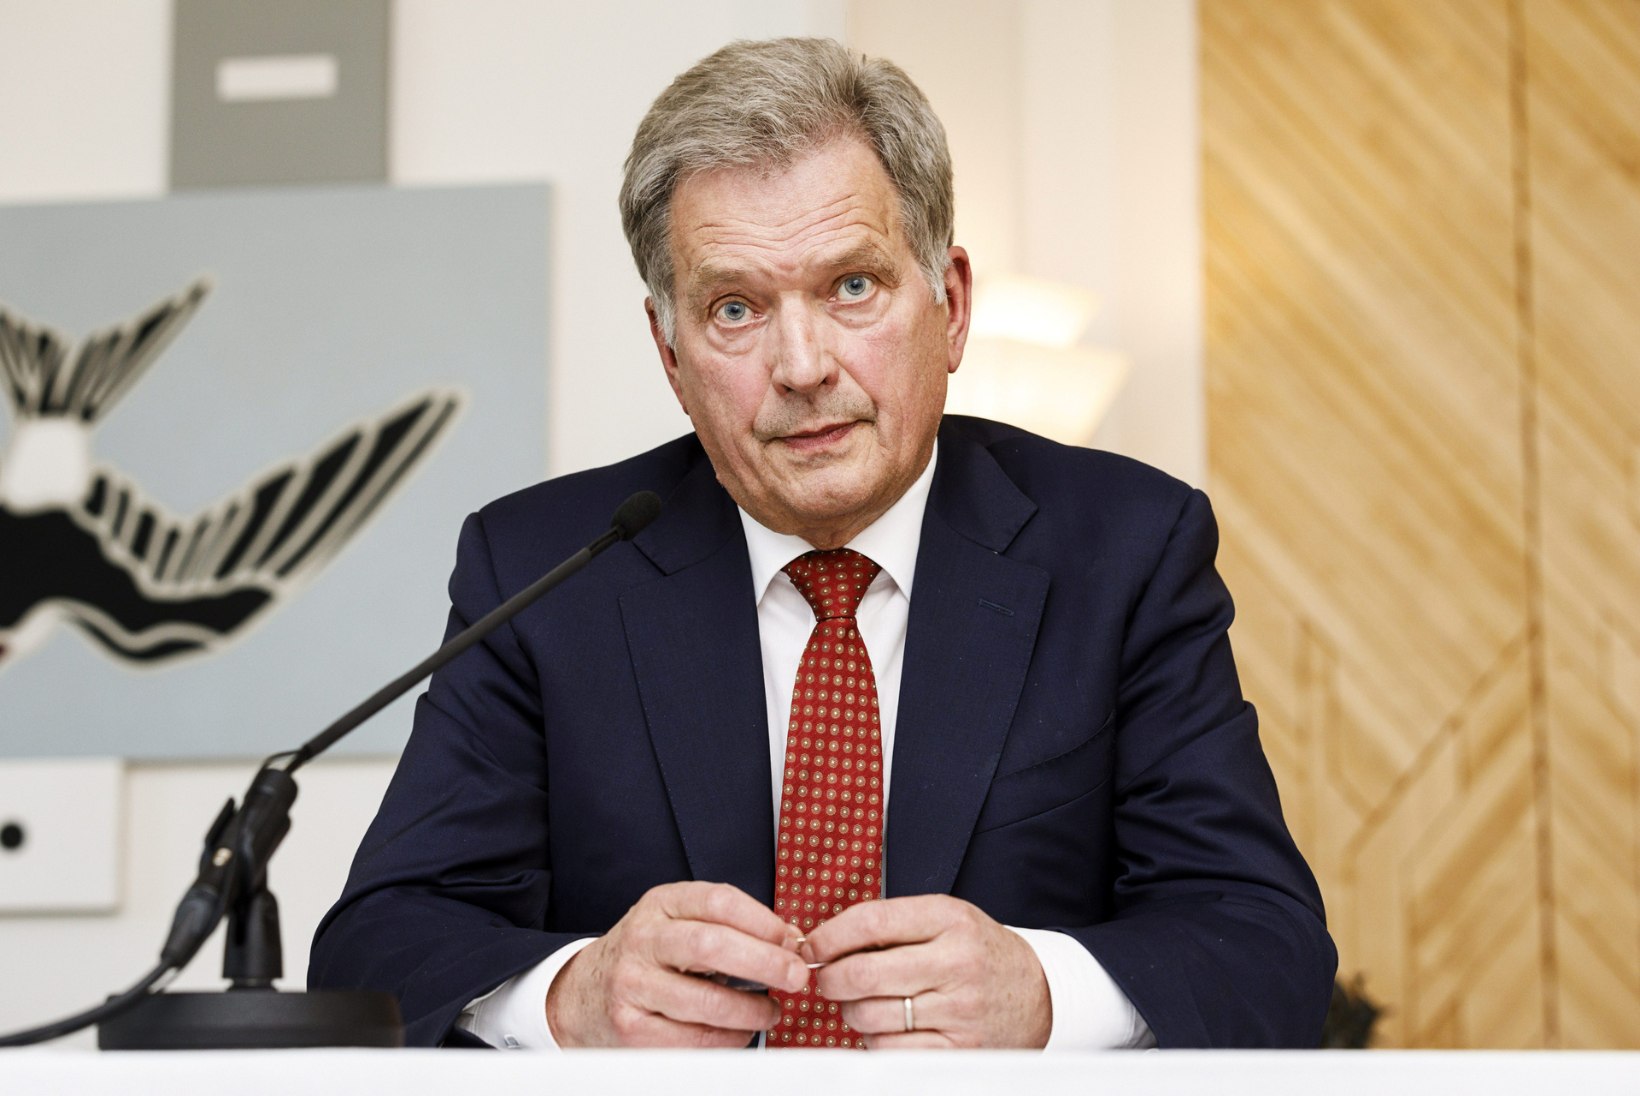 SUUR SÜDA: Soome president annetas heategevuseks 280 000 eurot